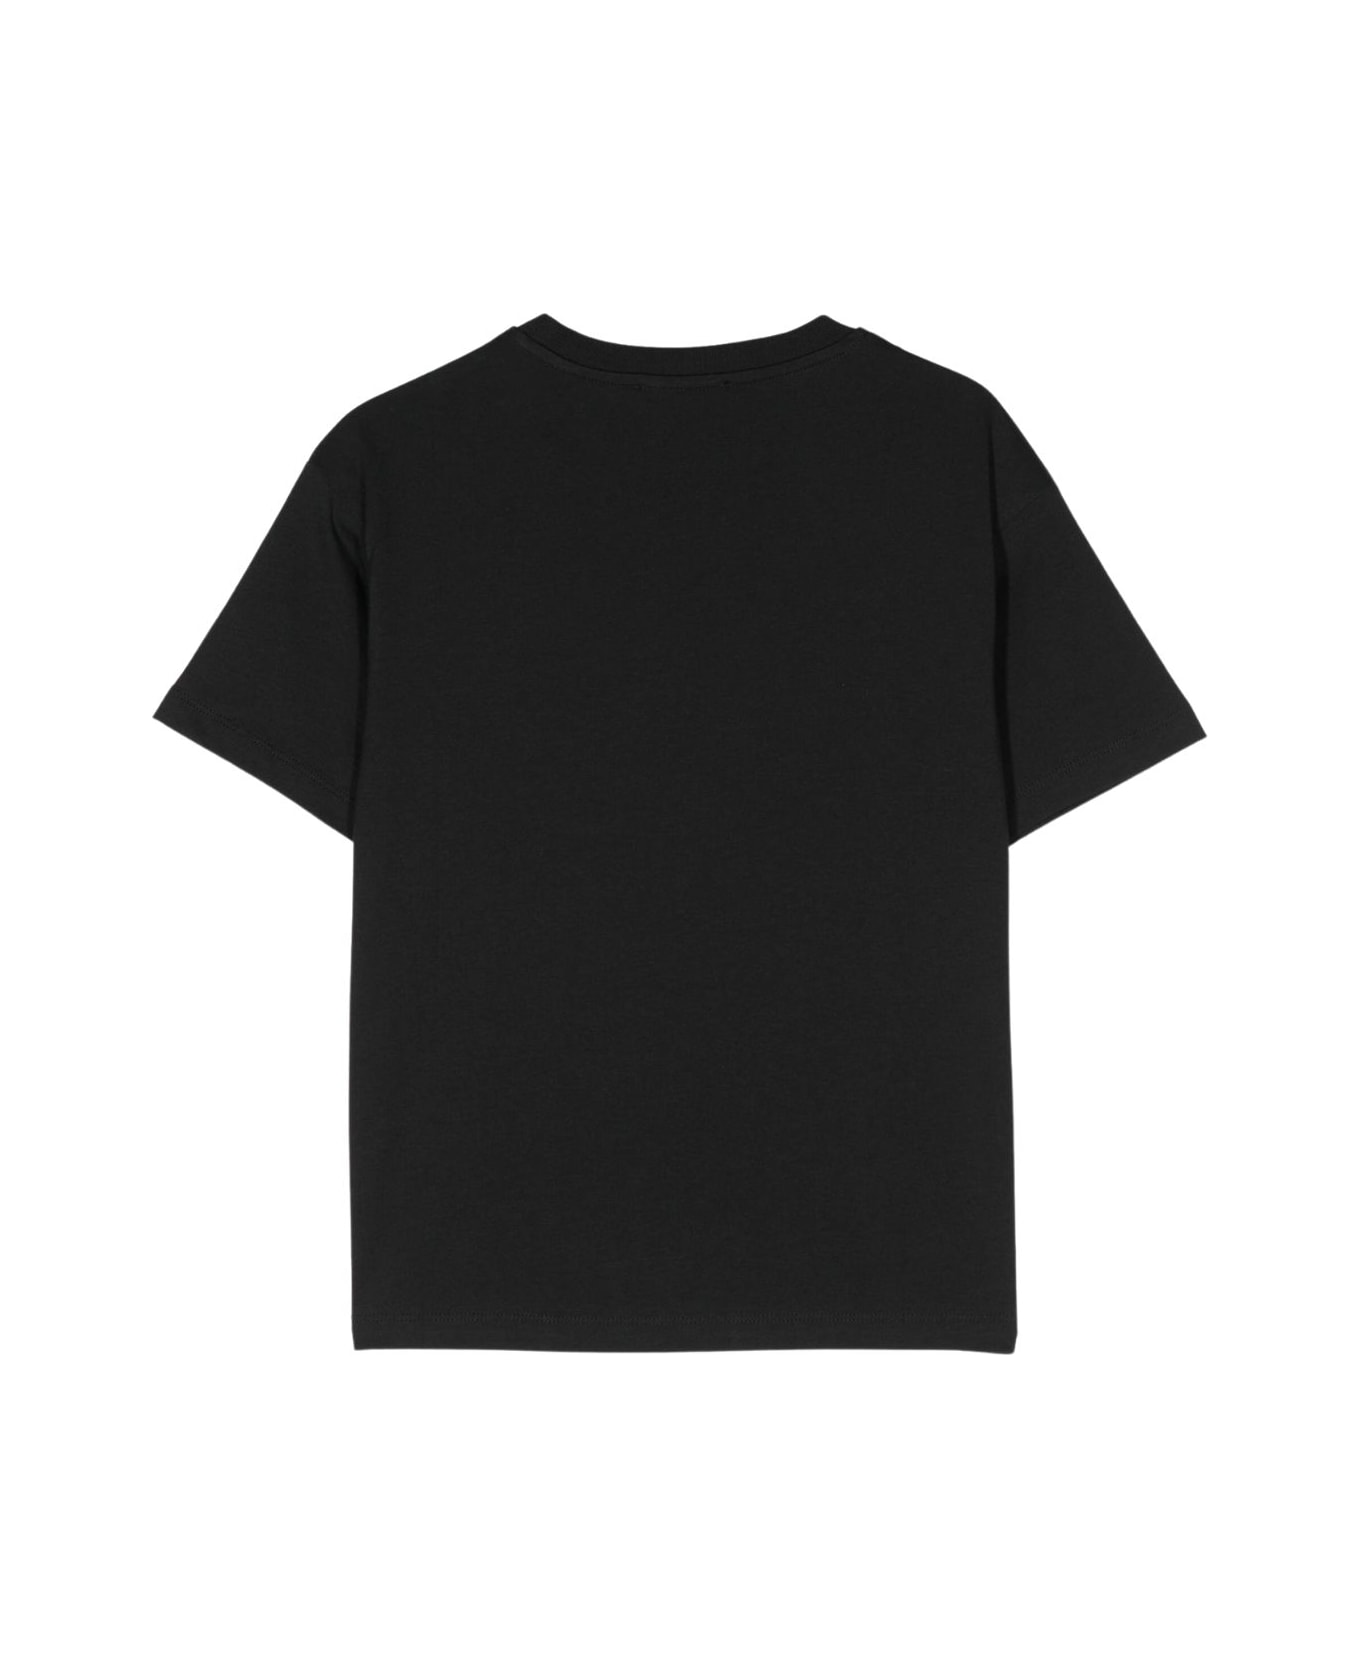 Balmain T Shirt - Bc Black White